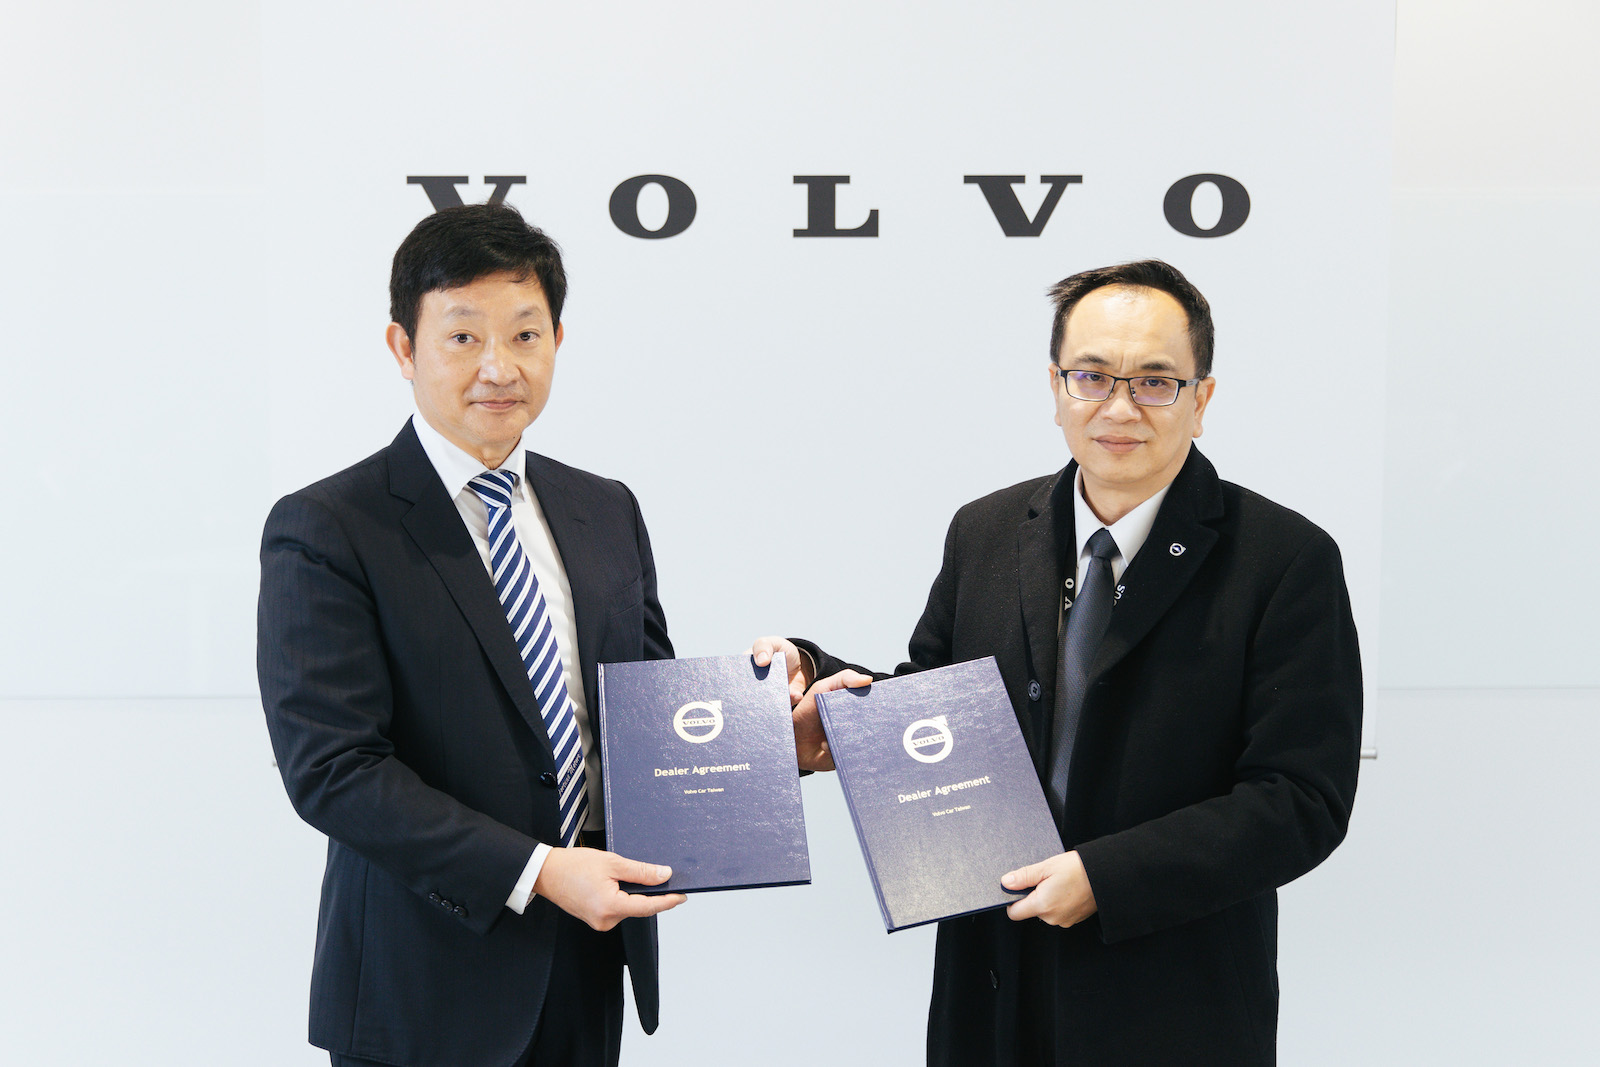 國際富豪汽車總裁陳立哲先生（右）代表歡迎匯勝汽車蔡奇峯董事長（左）加入Volvo 經銷體系。